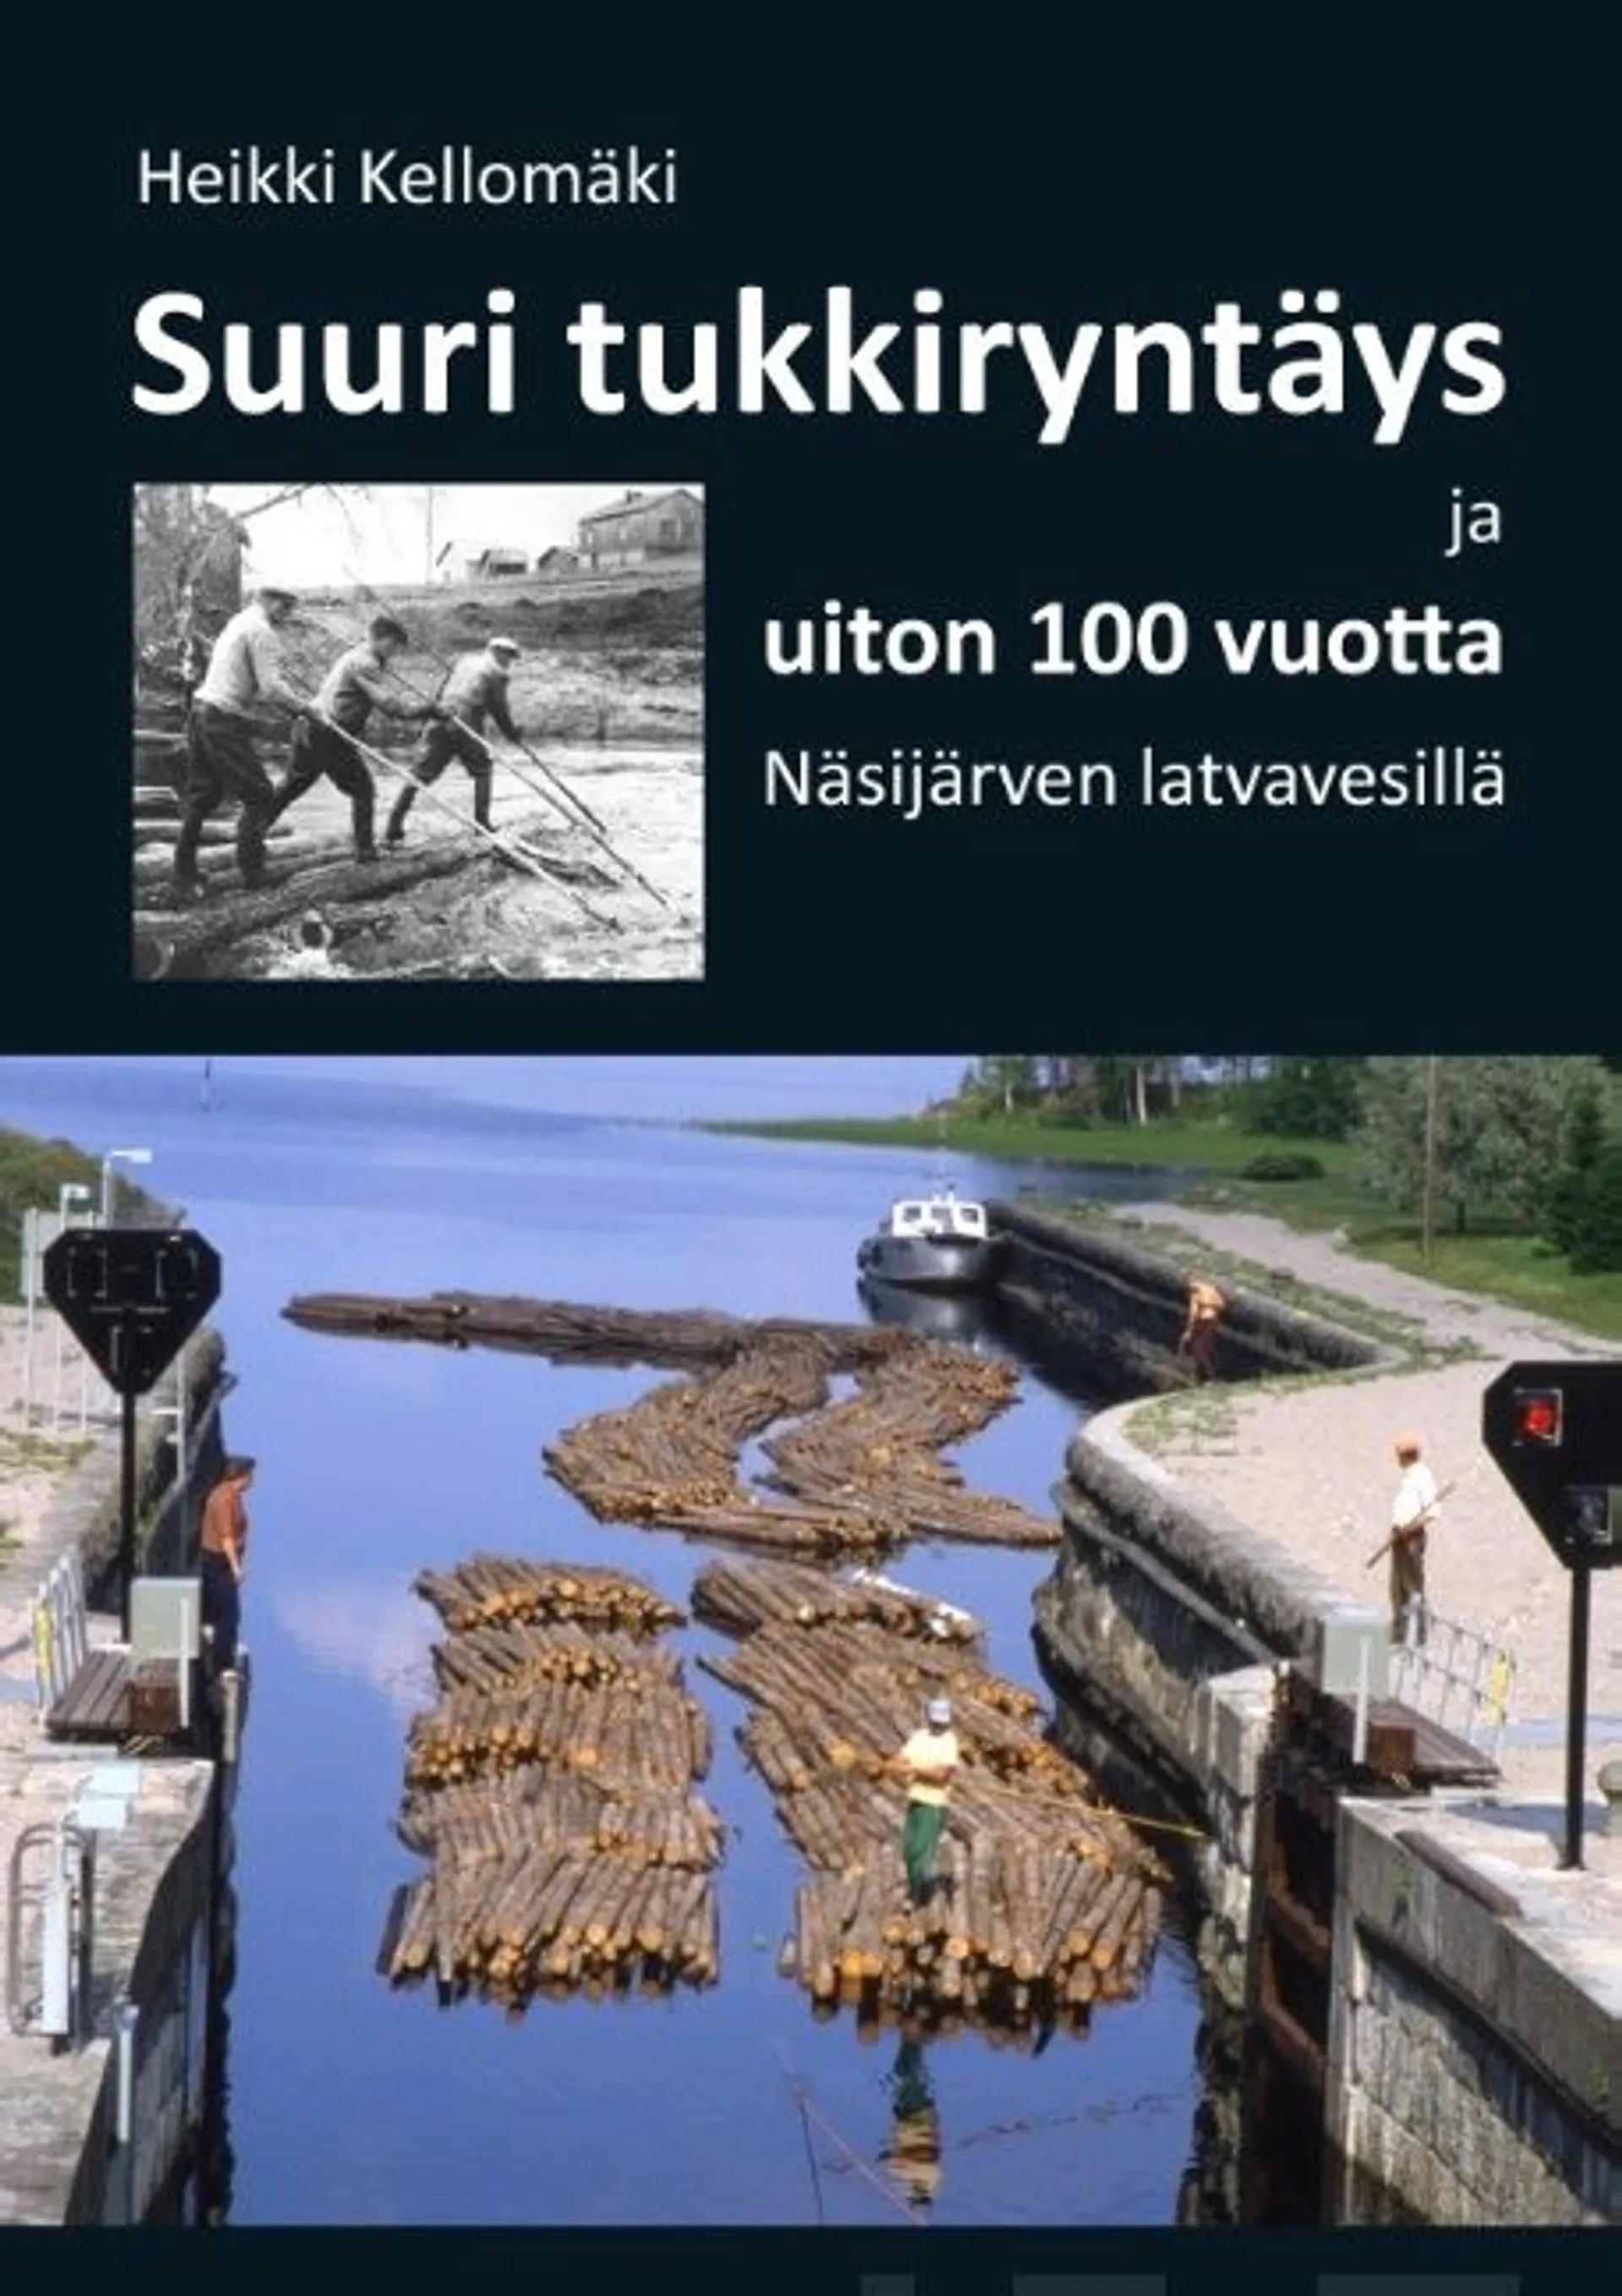 Kellomäki, Suuri tukkiryntäys ja uiton 100 vuotta Näsijärven latvavesillä